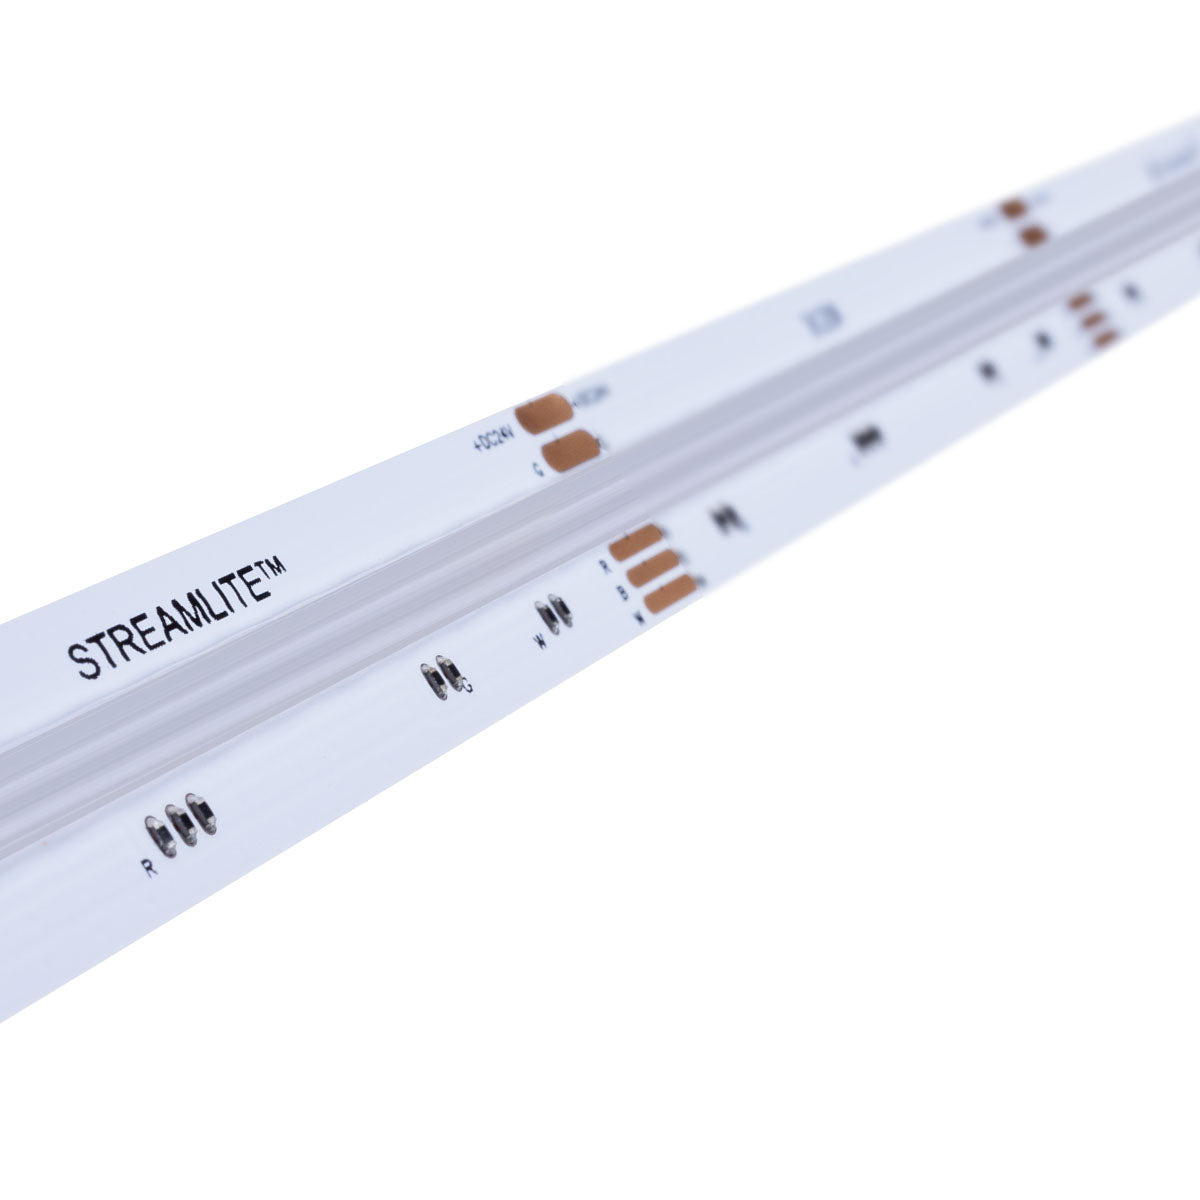 Diode LED DI-24V-STMLT-RGBW-016 - Streamlite Dotless LED Strip Light,  16.4ft Reel, Color Changing RGBW, 270 Lumens per Ft, 24V